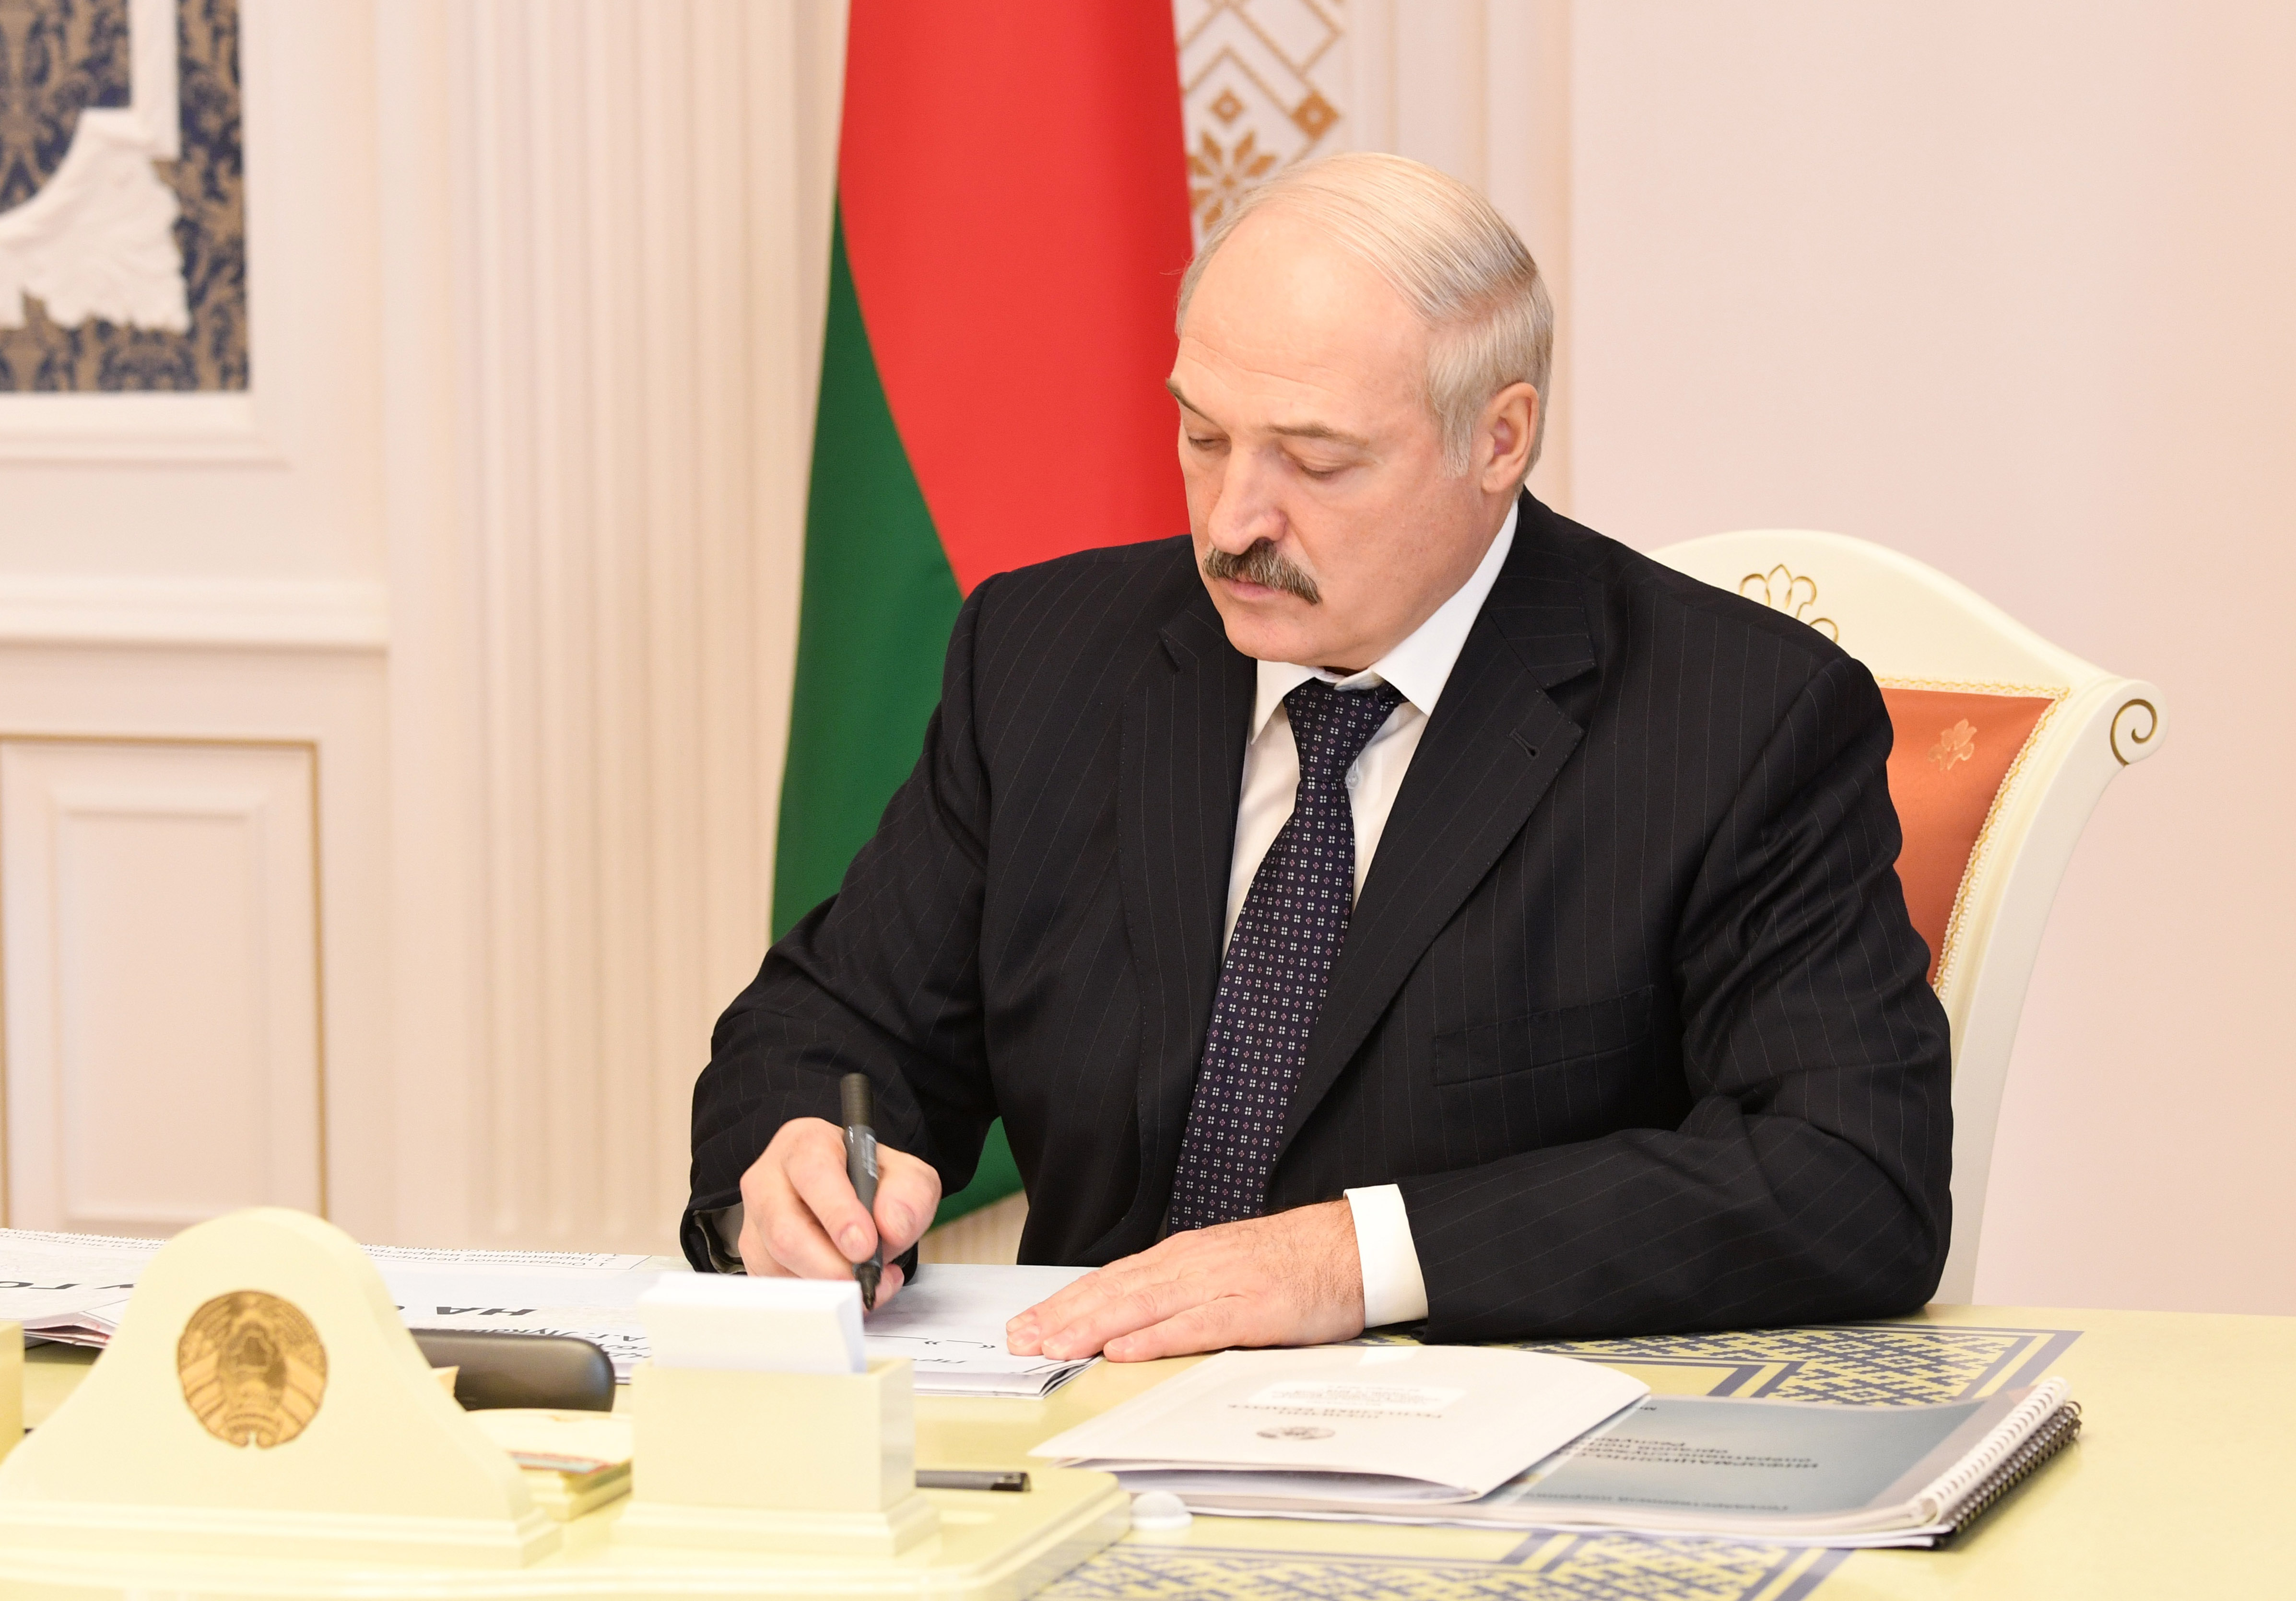 Лукашенко подписал указ о переводе госорганов. Лукашенко подписывает. Лукашенко подписывает указ. Лукашенко одобряет. Лукашенко лицо.